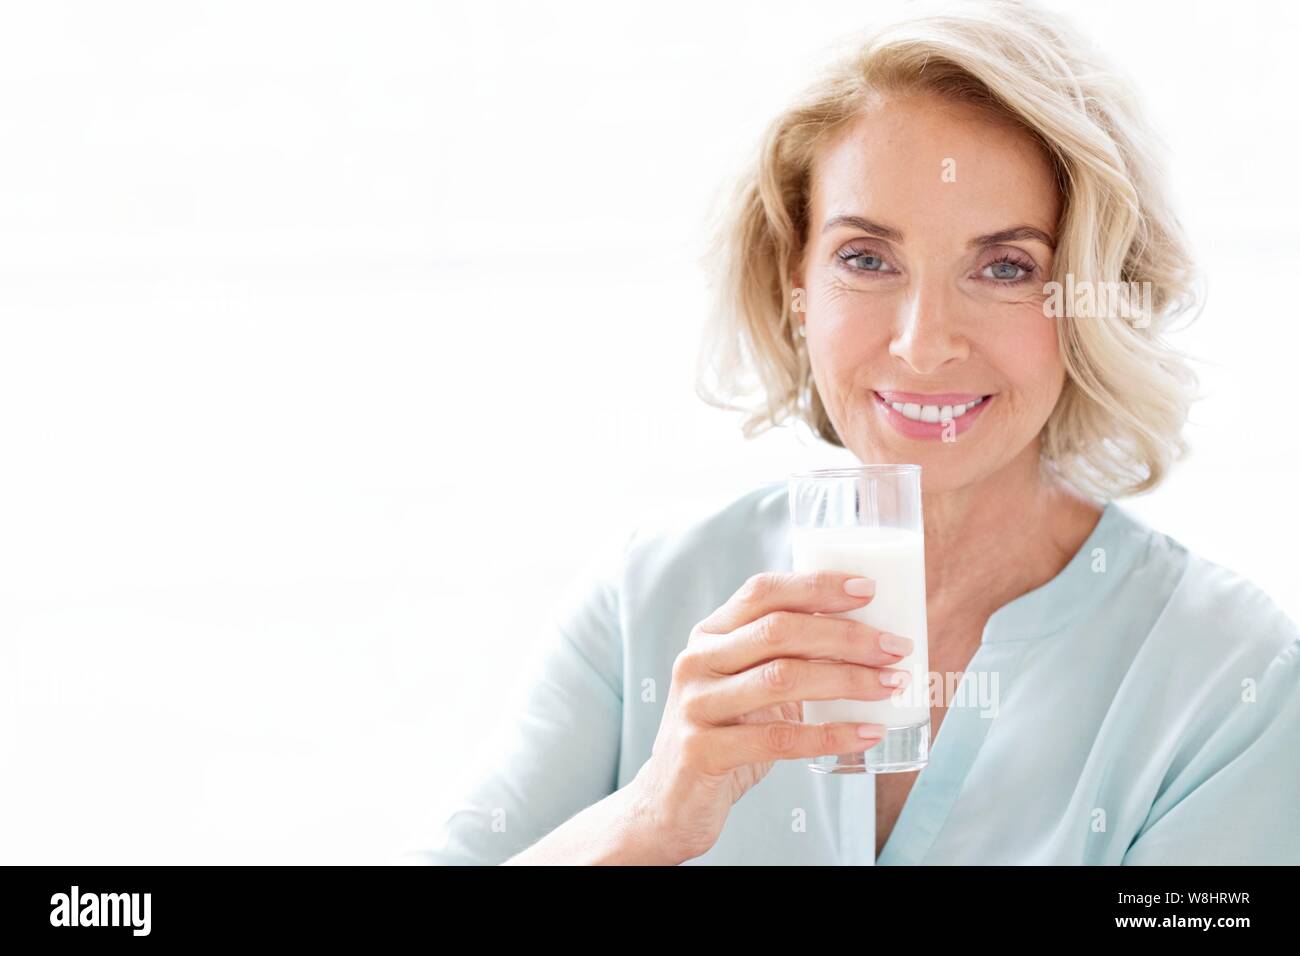 Young woman smiling avec verre de lait. Banque D'Images